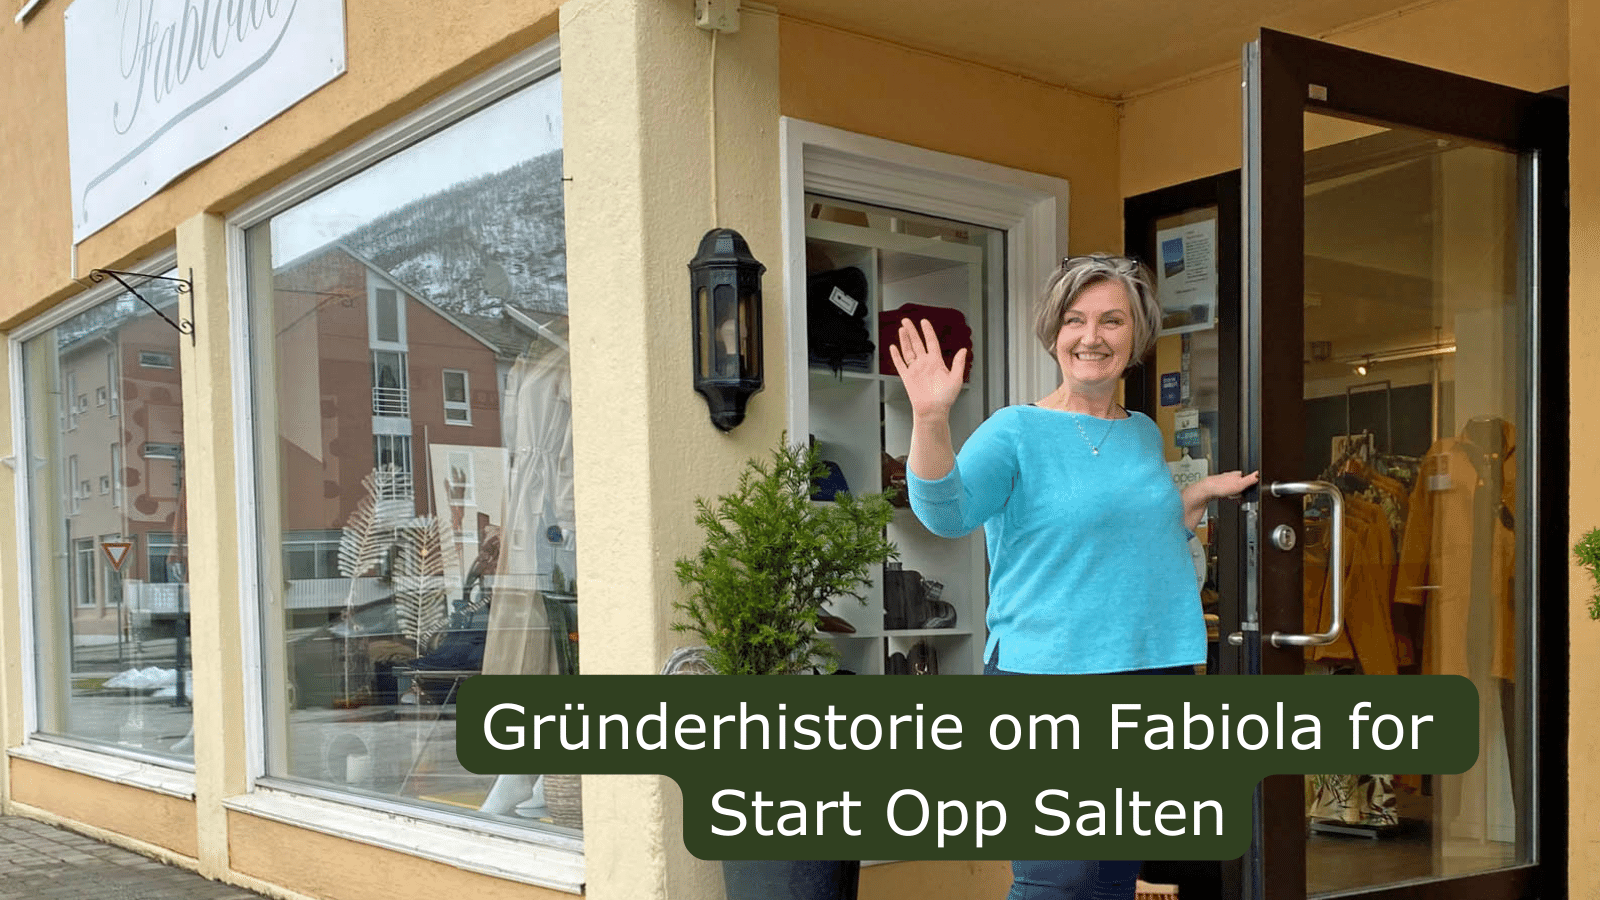 Vi fikk fortelle gründerhistorien om Fabiola i Meløy for Start Opp Salten